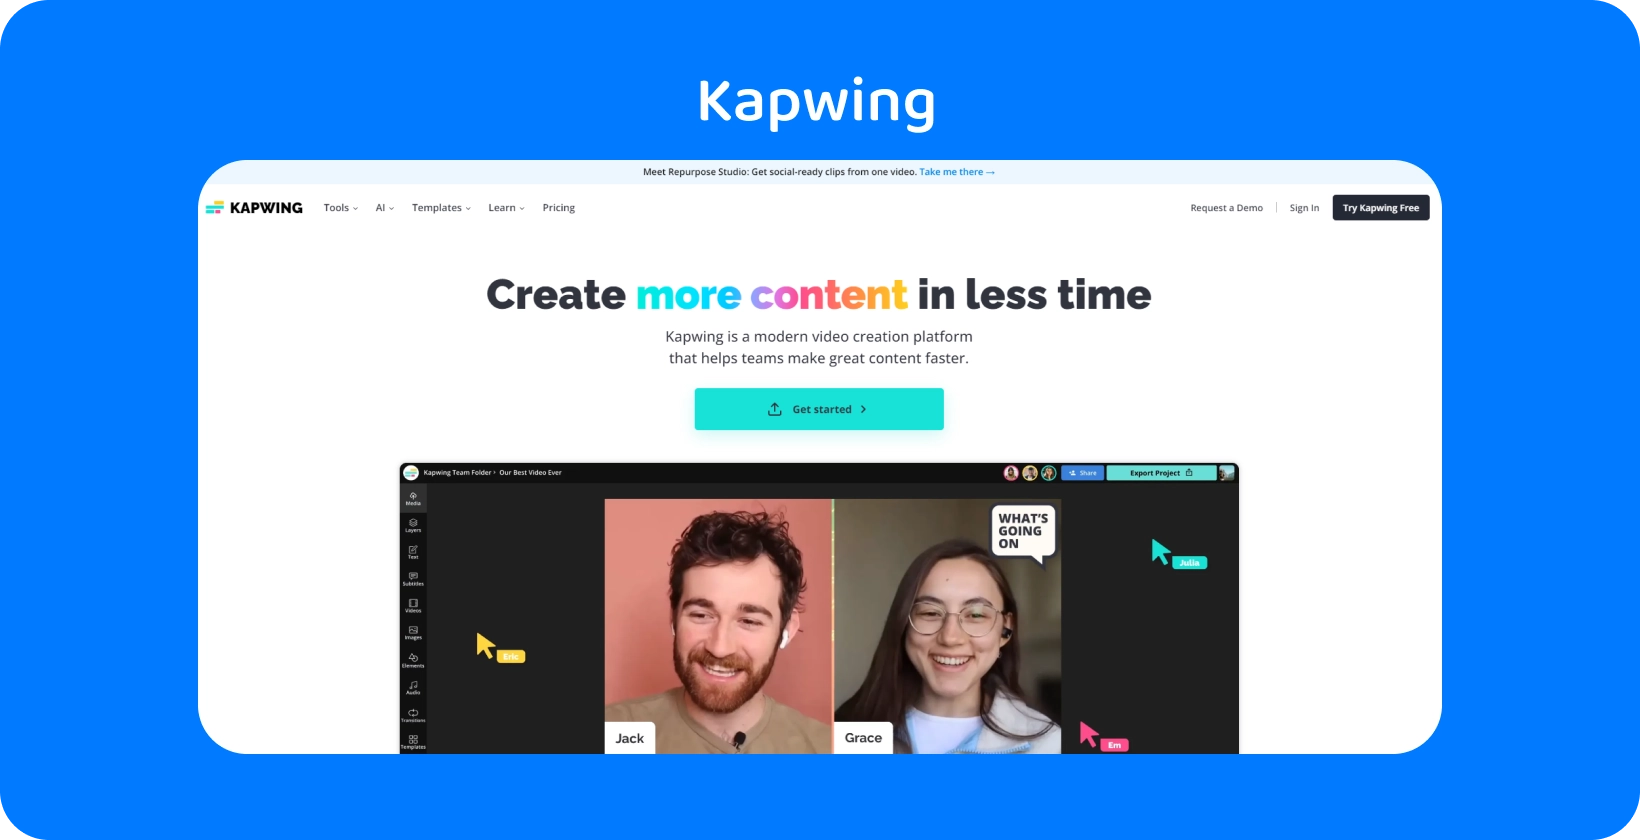 Редактор субтитров Kapwing продемонстрирован с удобным интерфейсом, помогающим командам в эффективном создании контента.